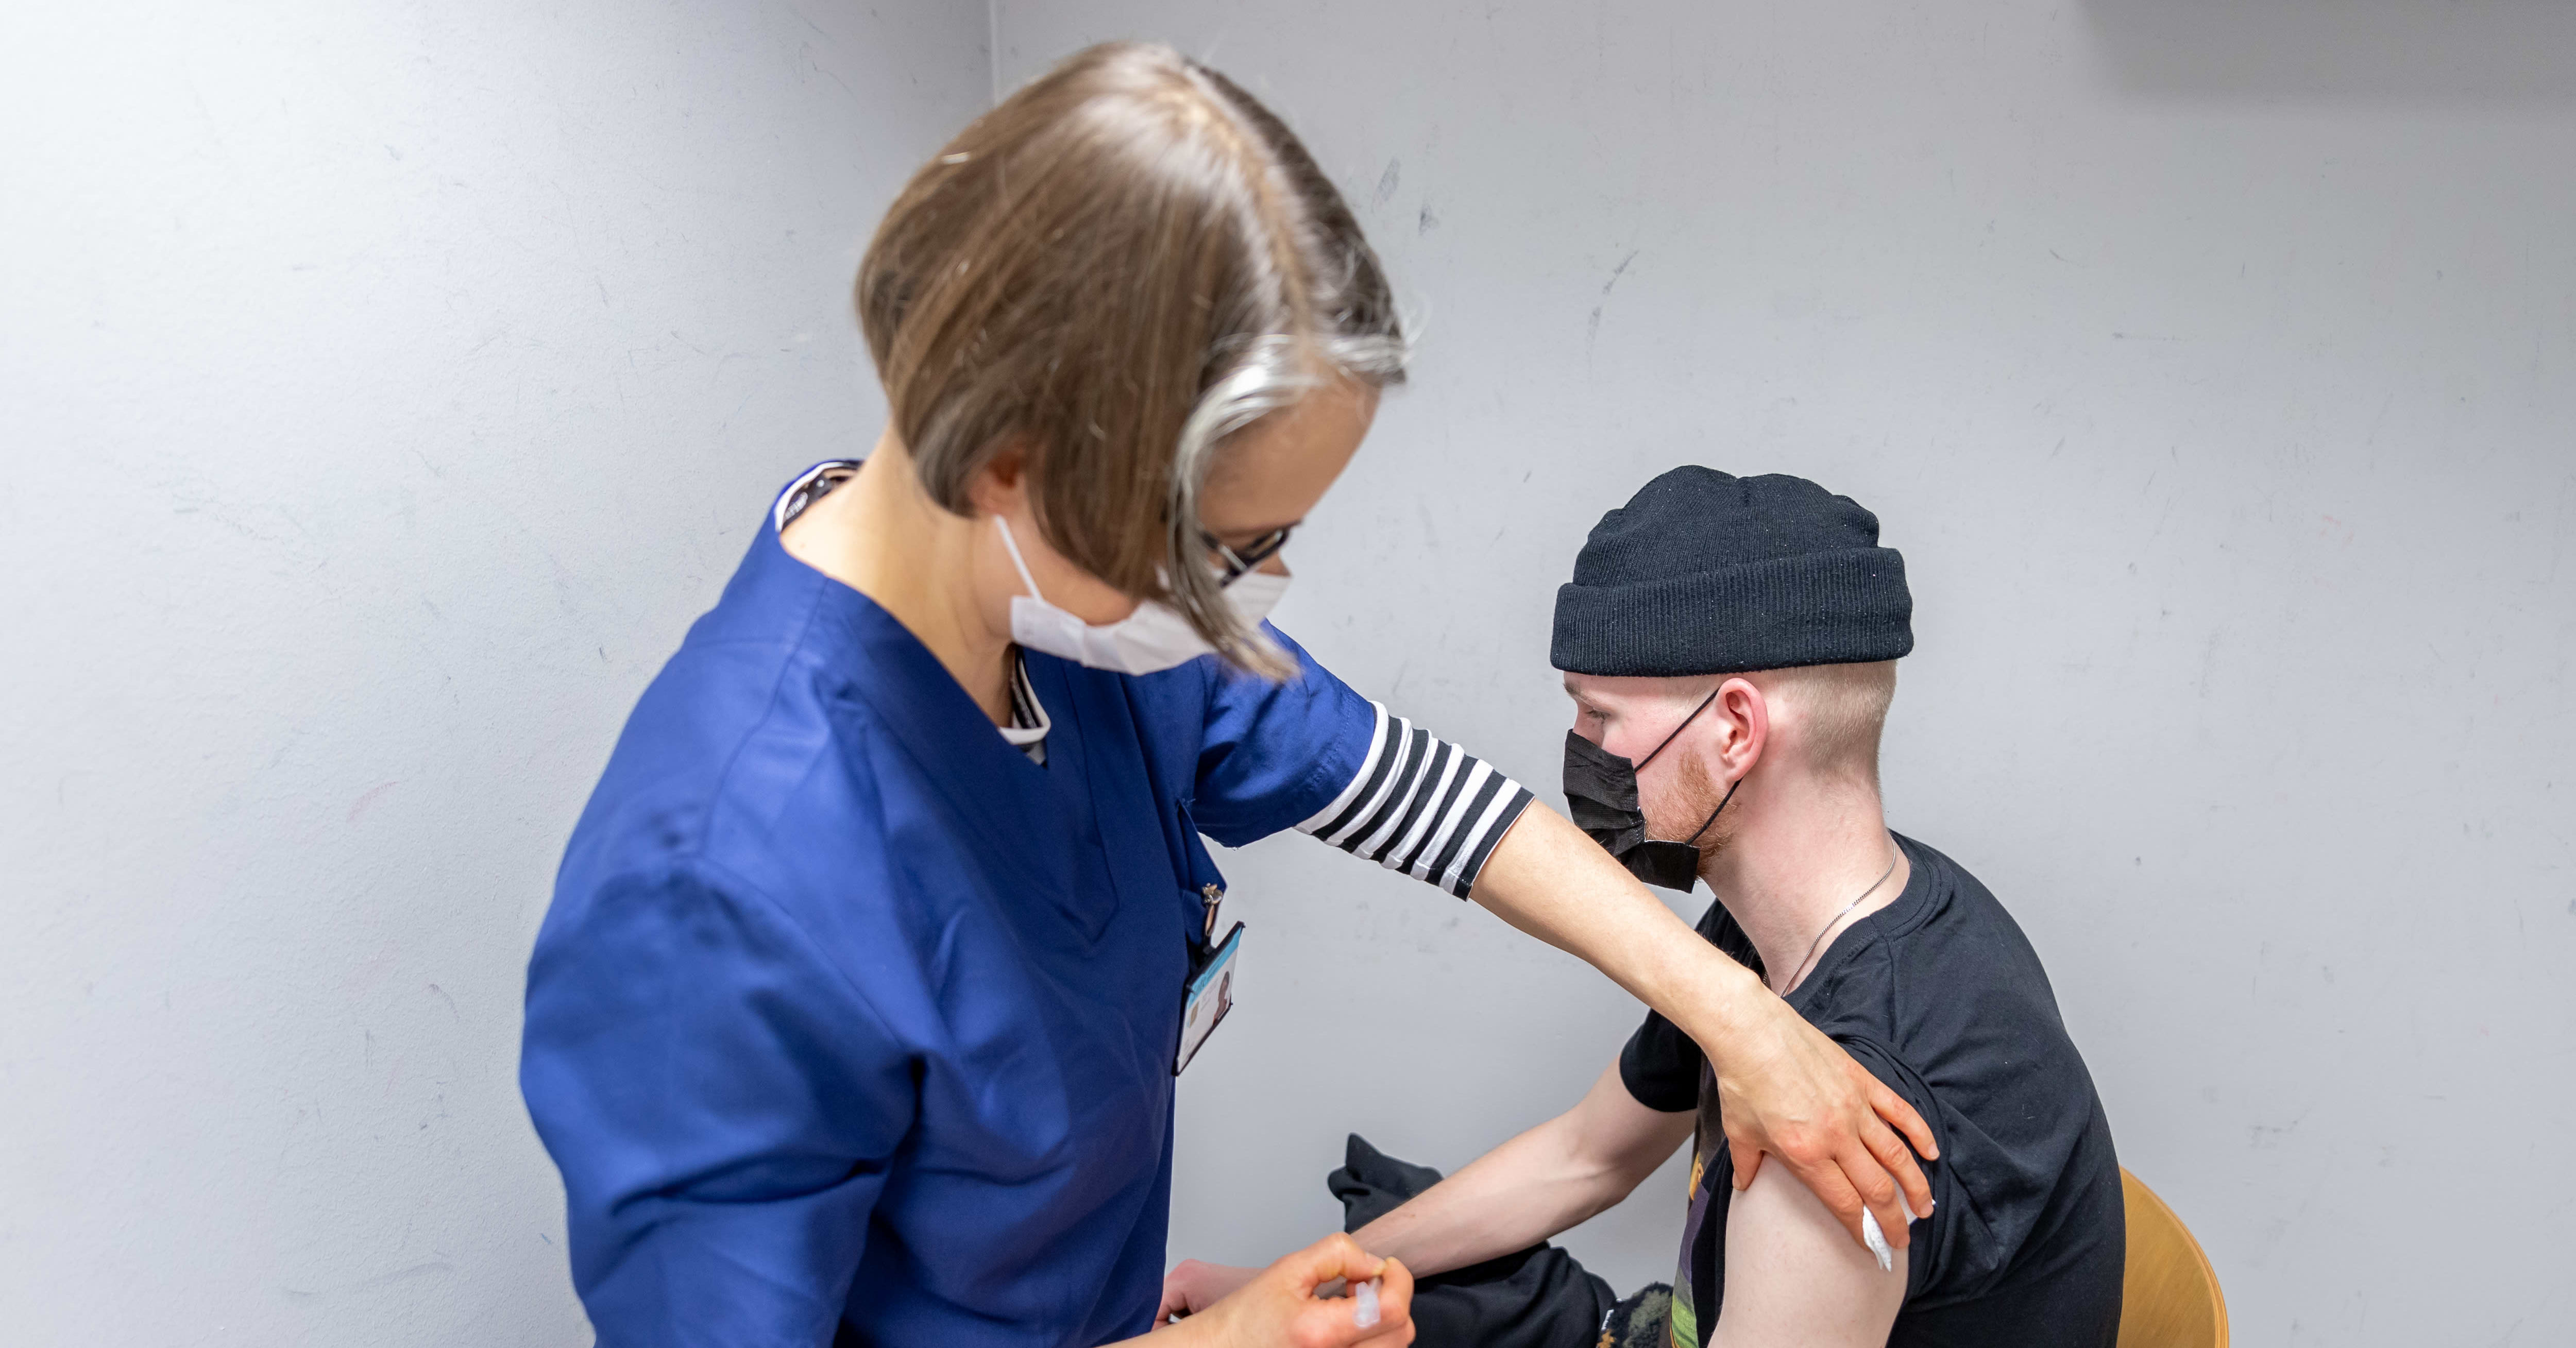 Suomi saavutti rokotustavoitteen, mutta epidemia jatkuu – HUSin ylilääkäri: ”Meidän pitää oppia elämään taudin kanssa”